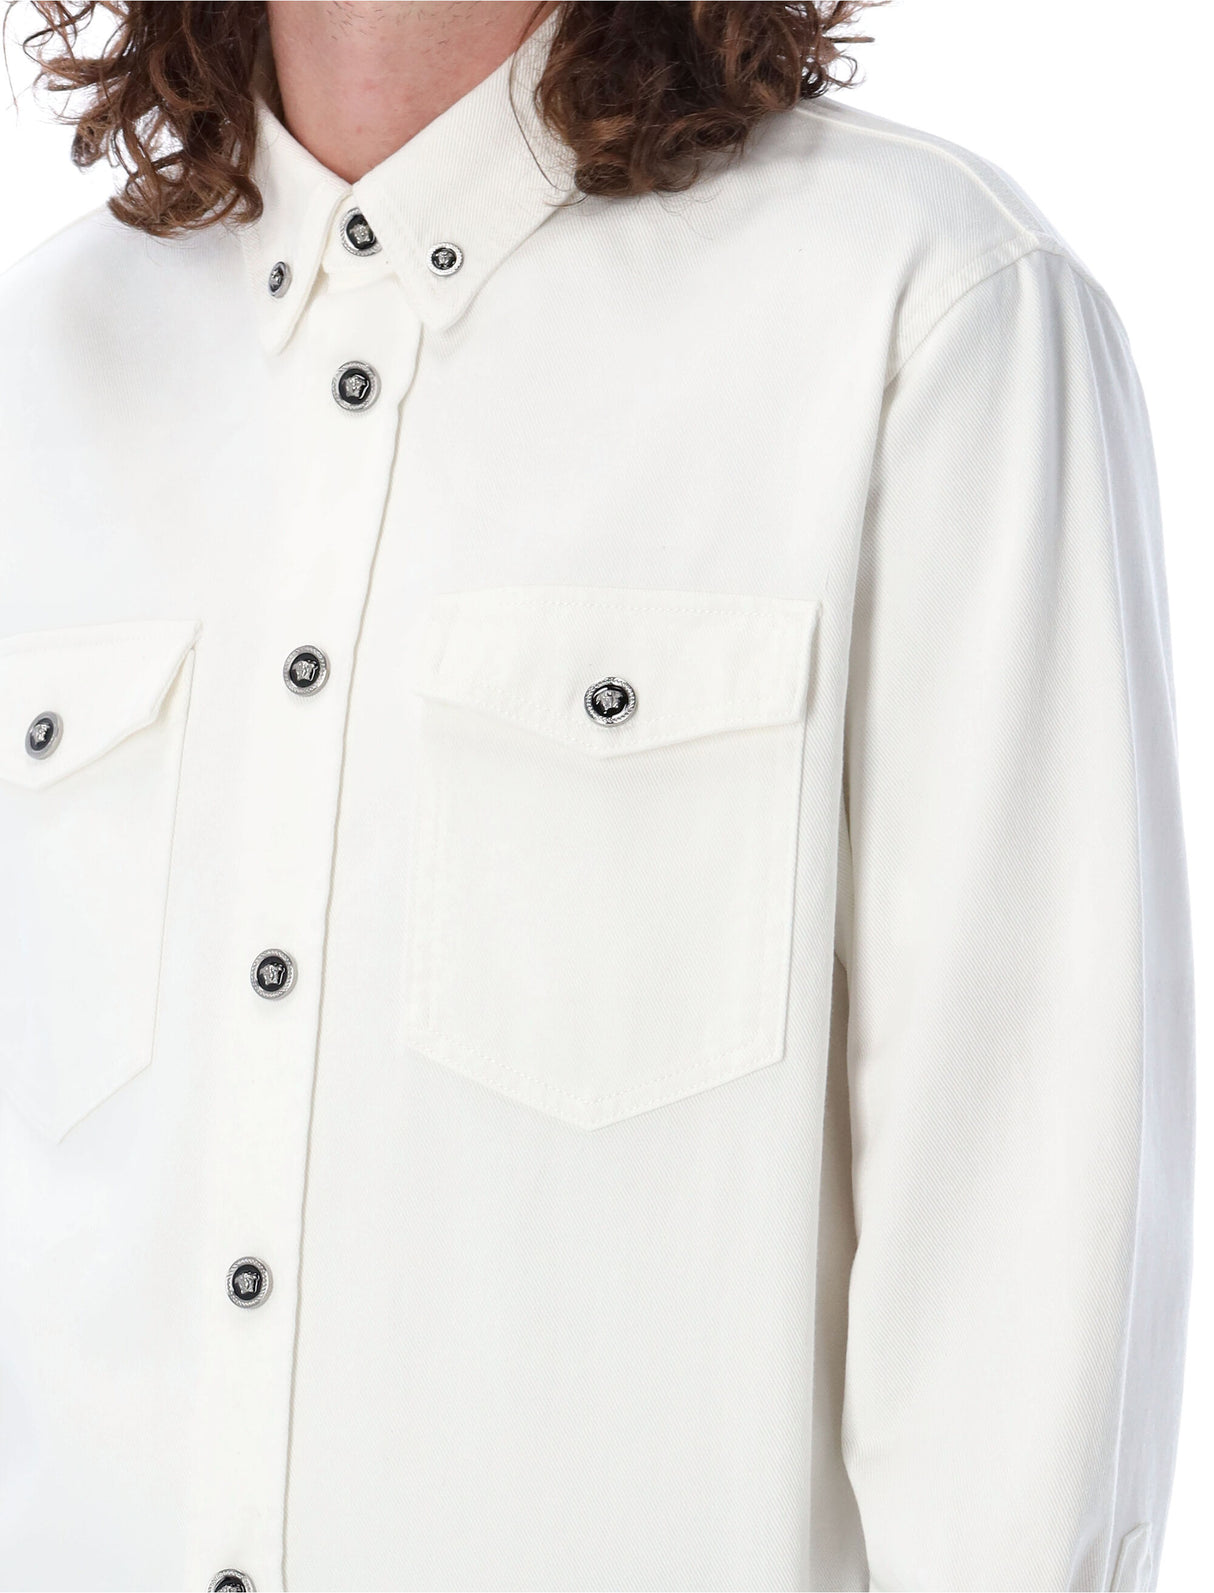 メンズホワイトデニムオーバーシャツ with メデューサハードウェア and ボタンクロージャー